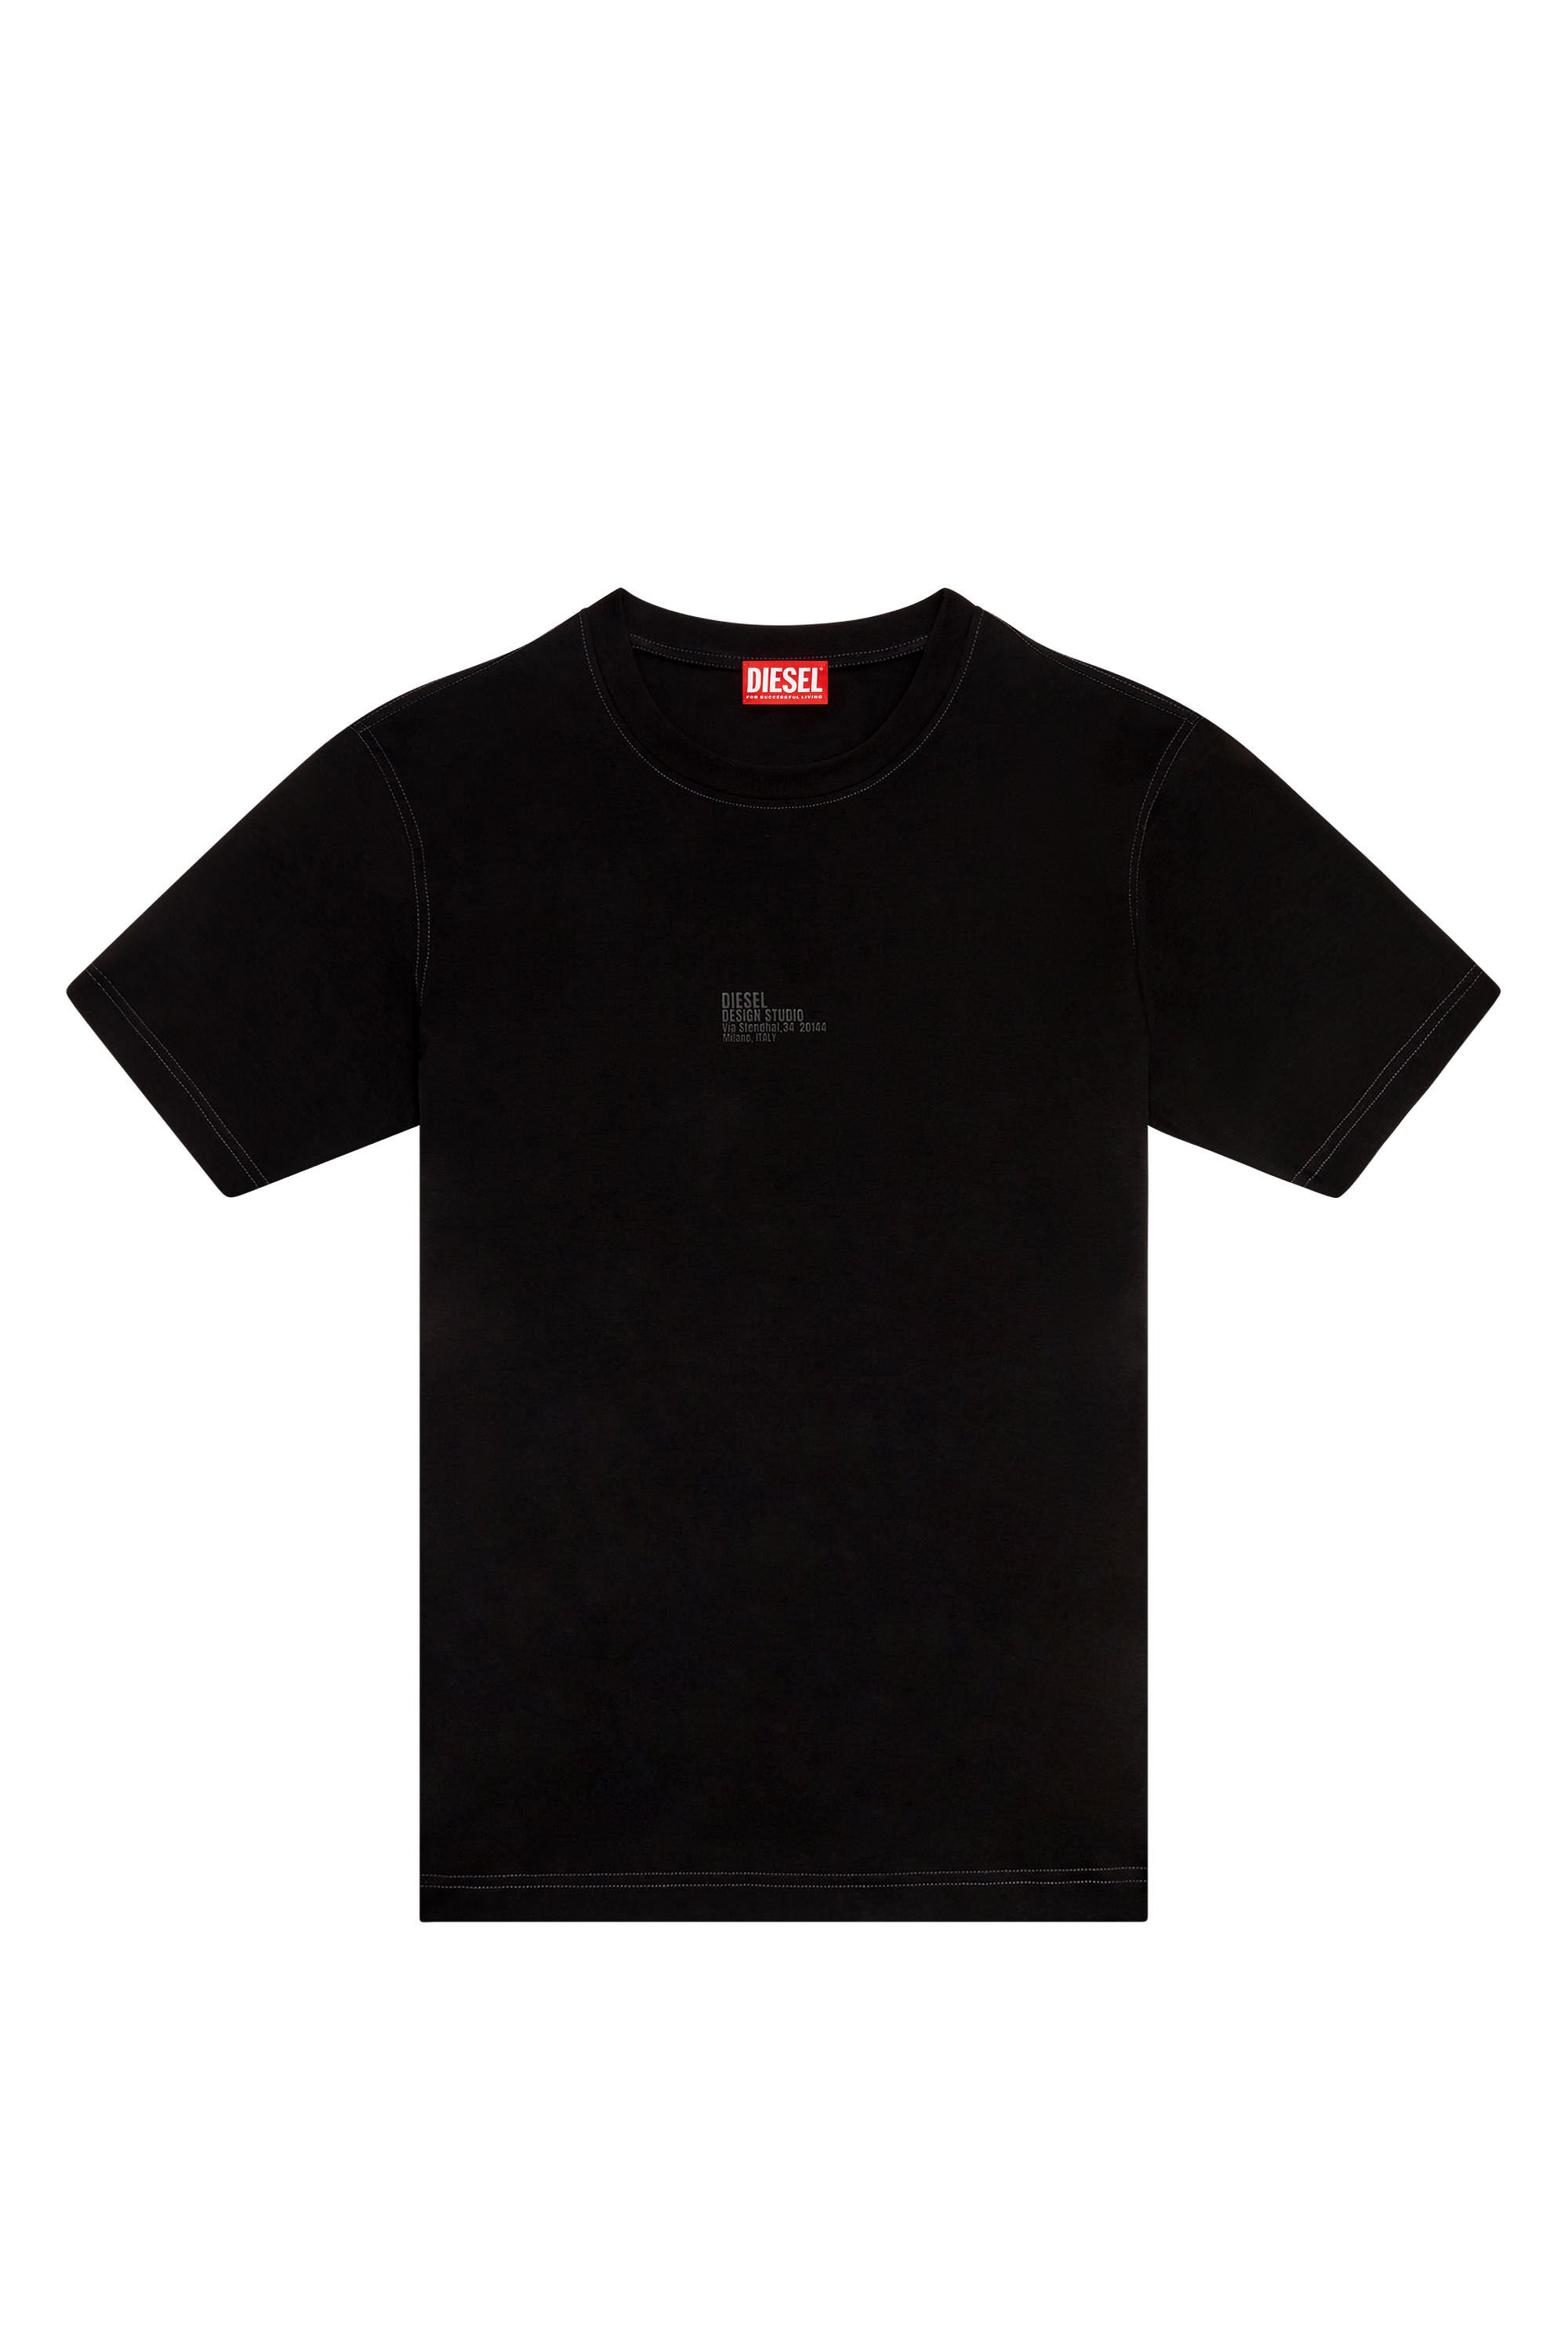 Diesel - T-MUST-SLITS-N2, Man T-shirt with Diesel Studio print in Black - Image 2